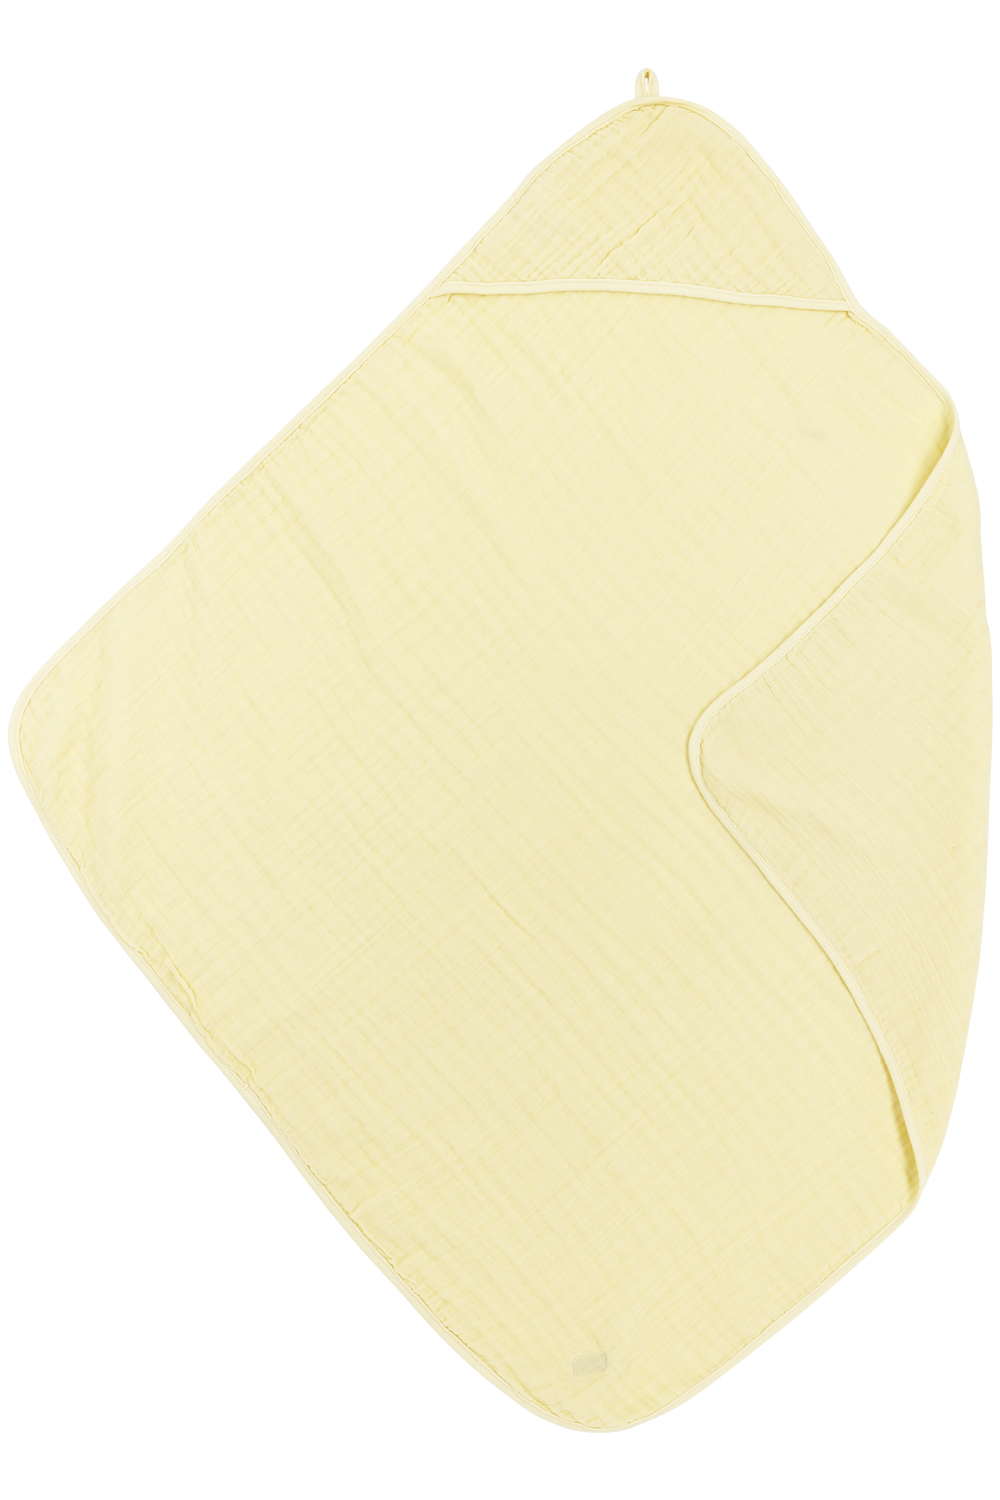 Bathcape pre-washed muslin Uni - soft yellow - 80x80cm